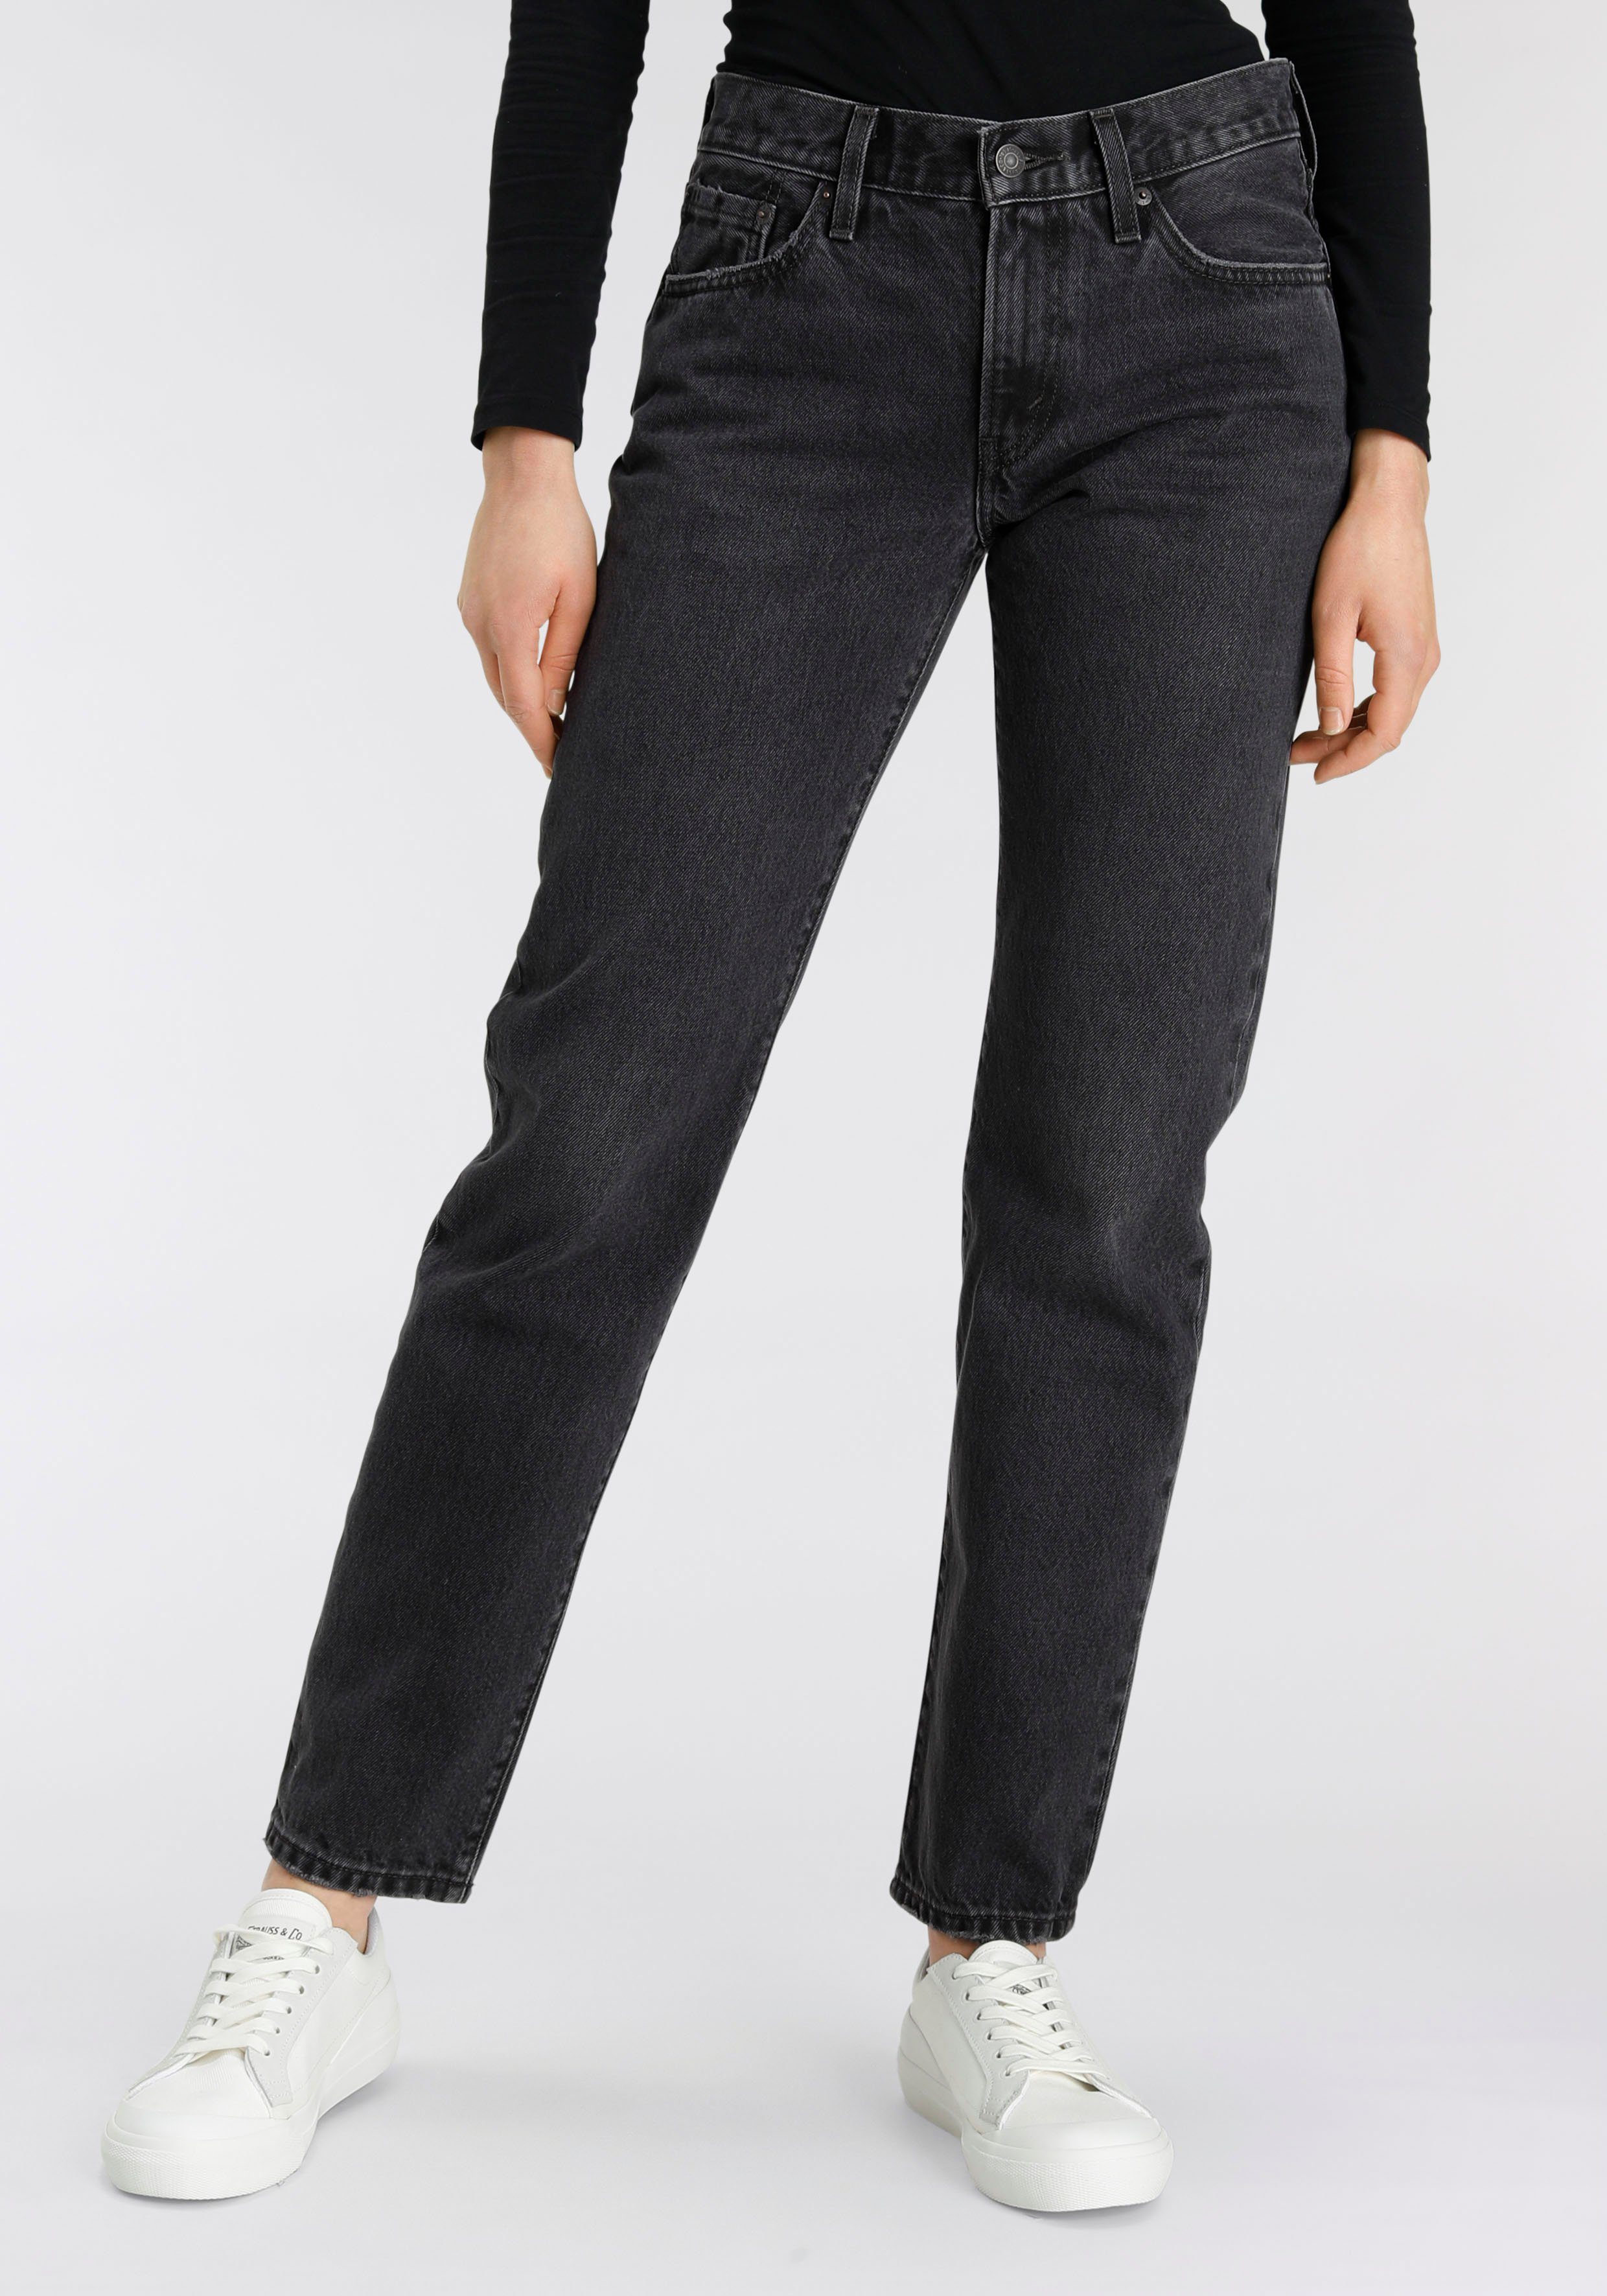 Angebotsrabatt Levi's® Gerade Jeans black STRAIGHT MIDDY